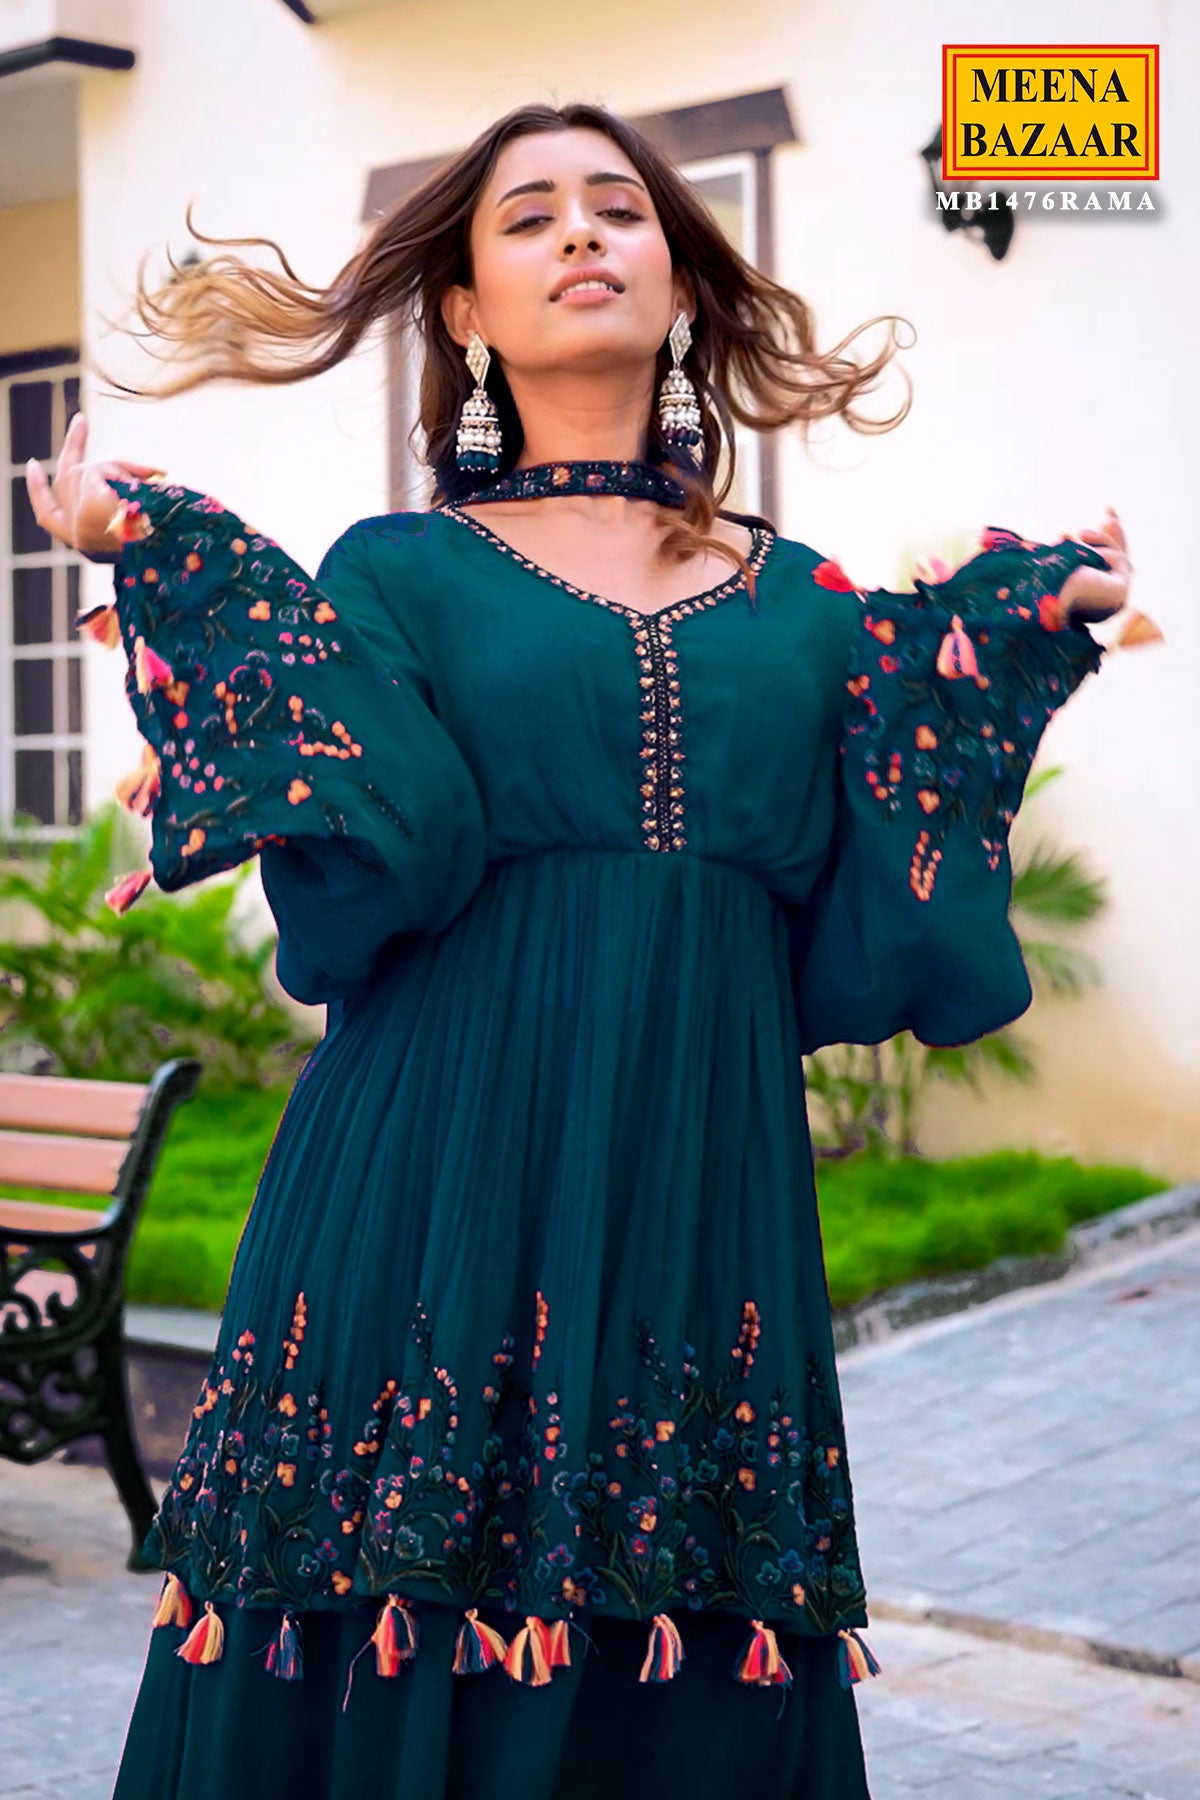 Meena Bazaar Dress Material - Buy Meena Bazaar Dress Material online in  India